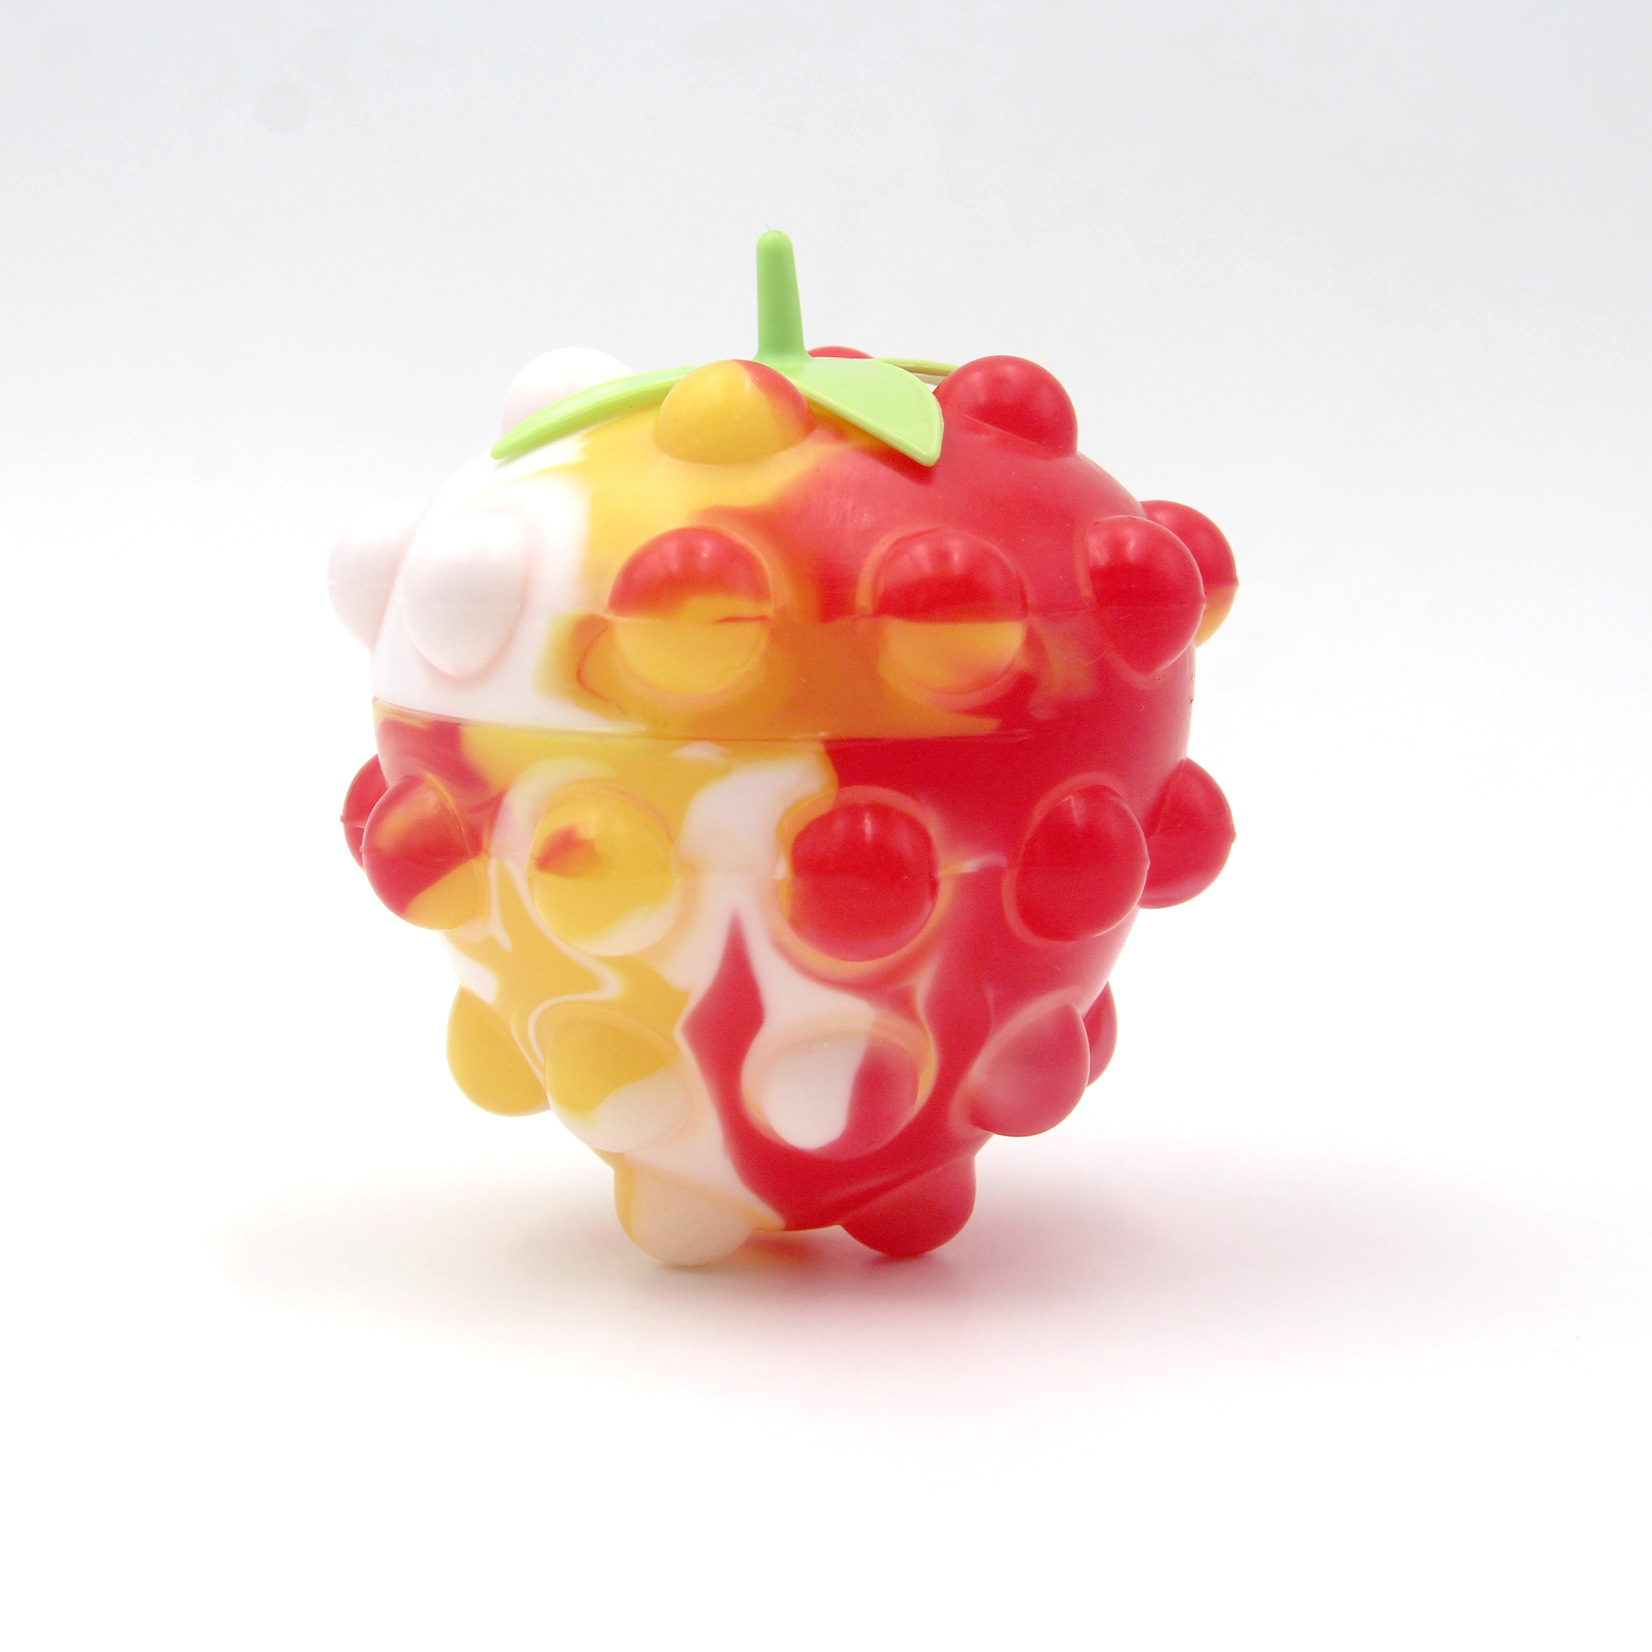 Lodra me top ndijor 3D në formë frutash (1)